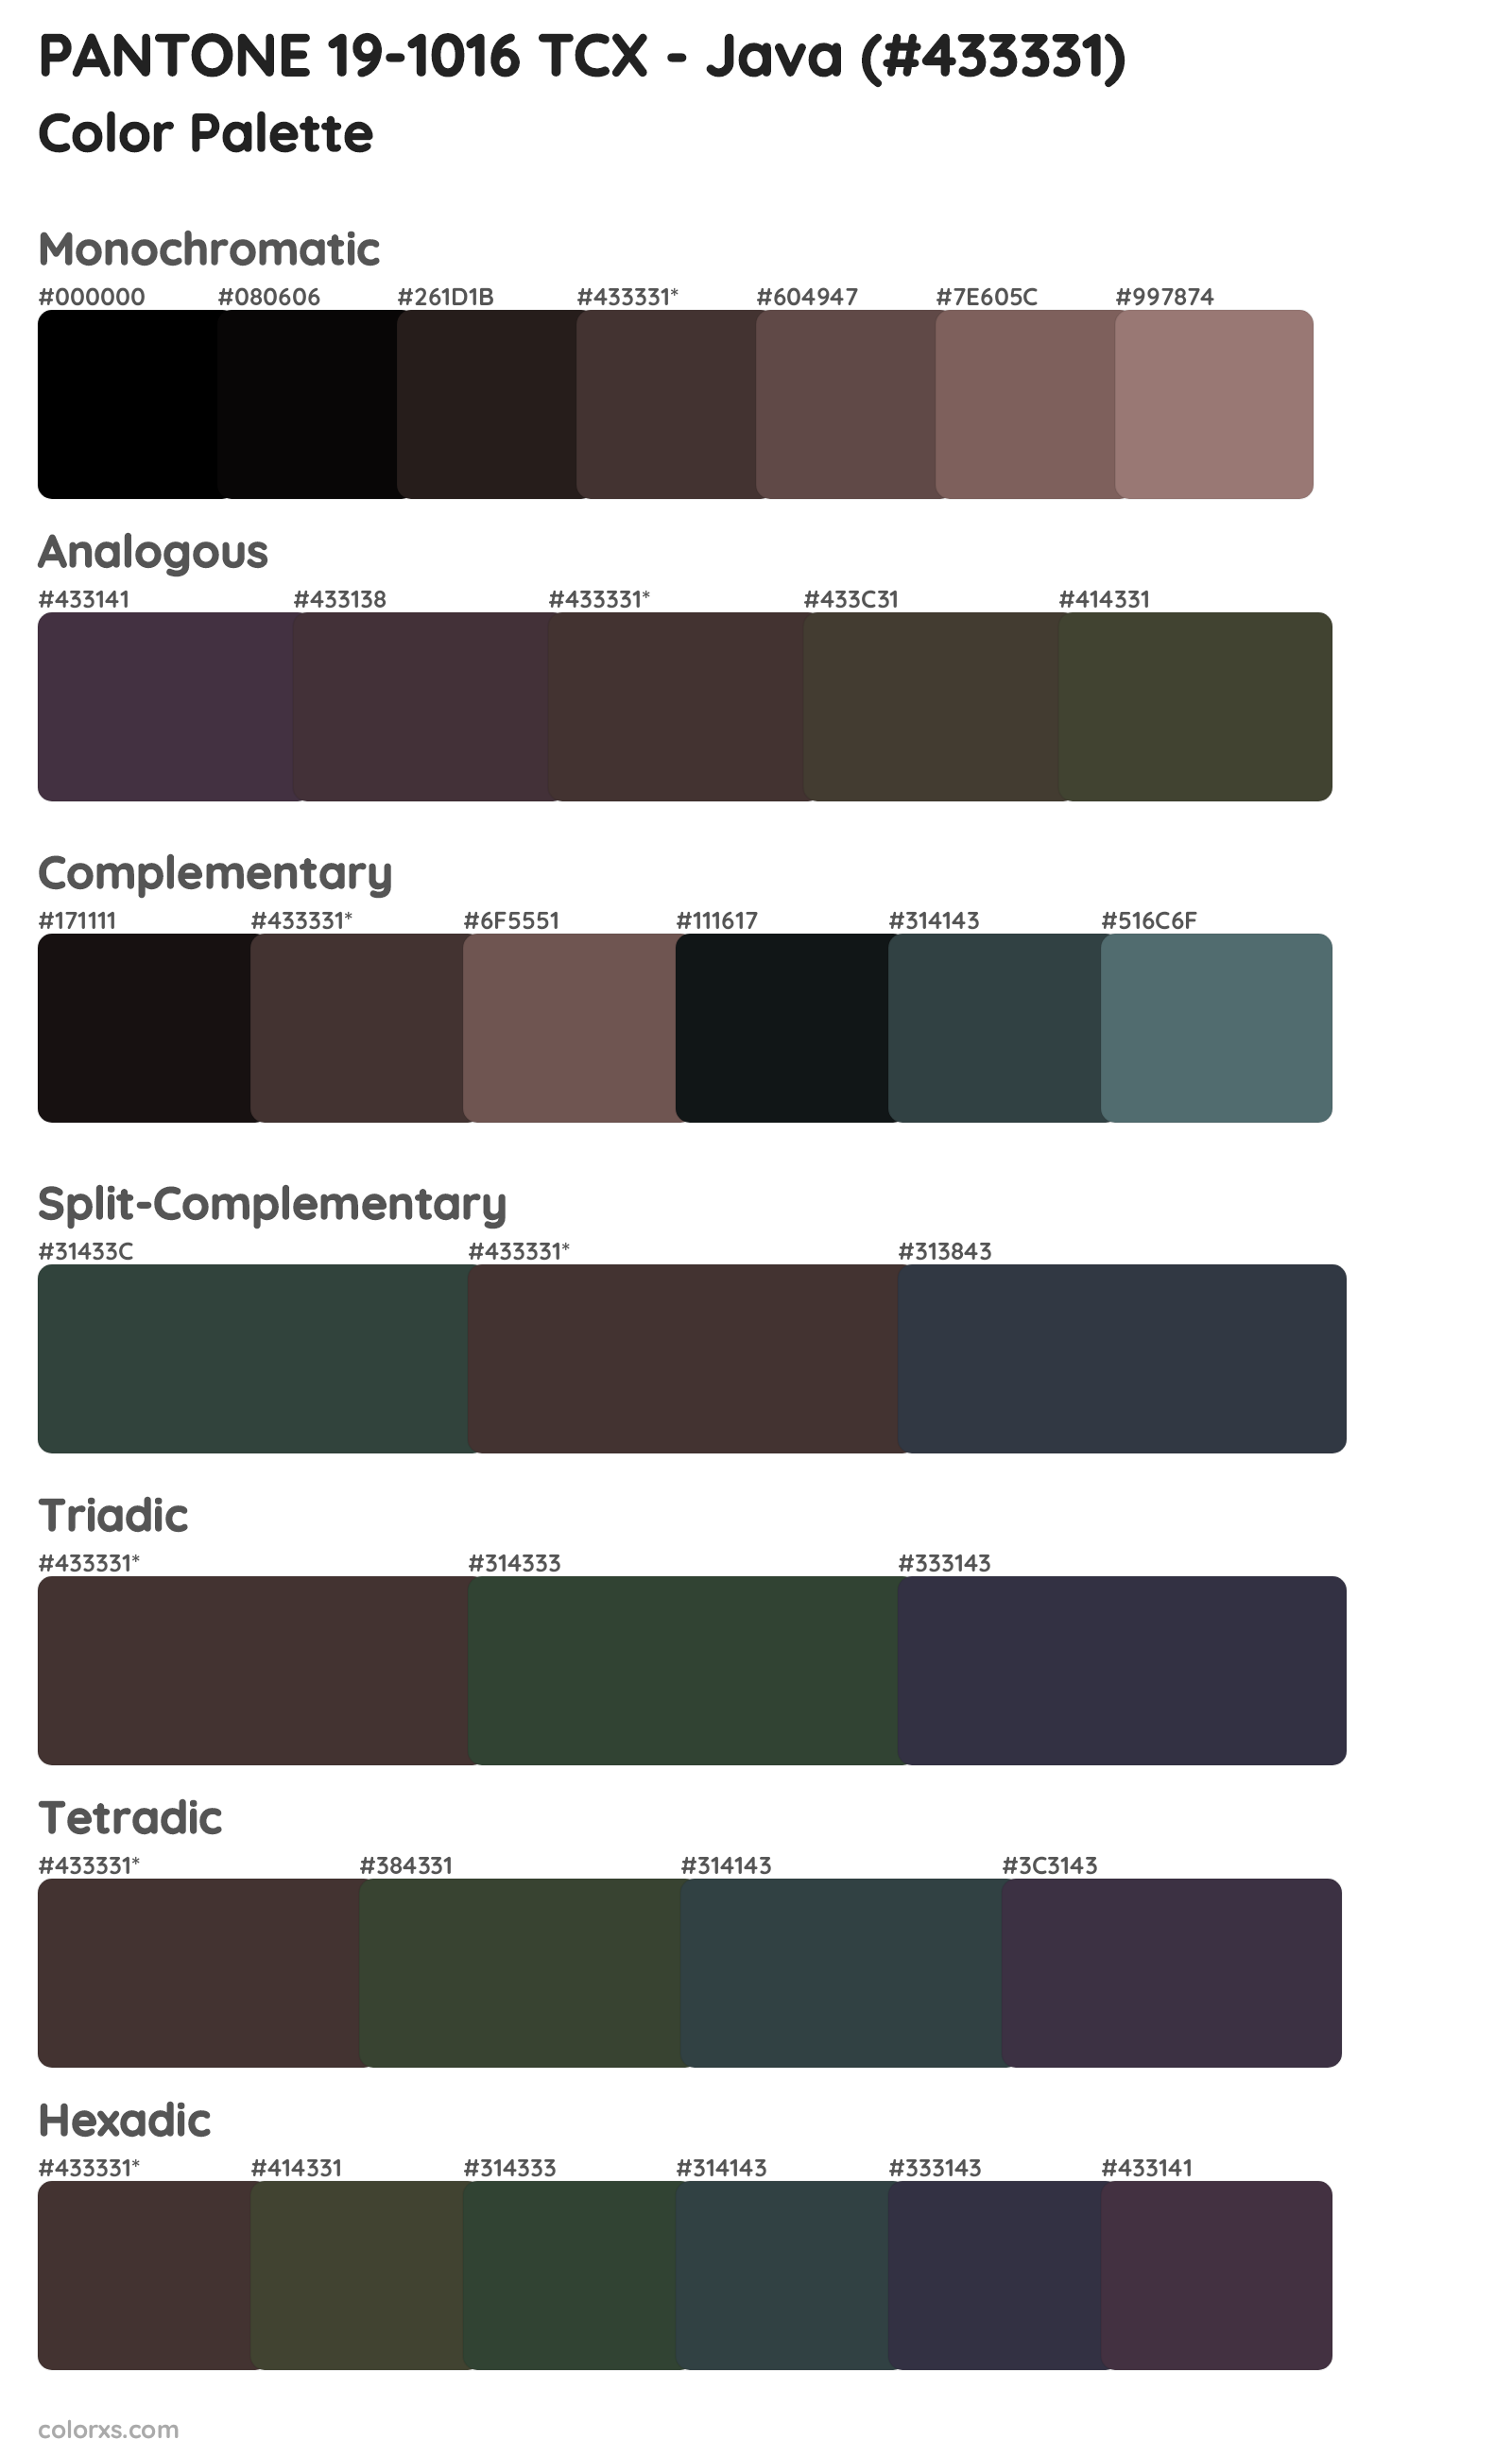 PANTONE 19-1016 TCX - Java Color Scheme Palettes